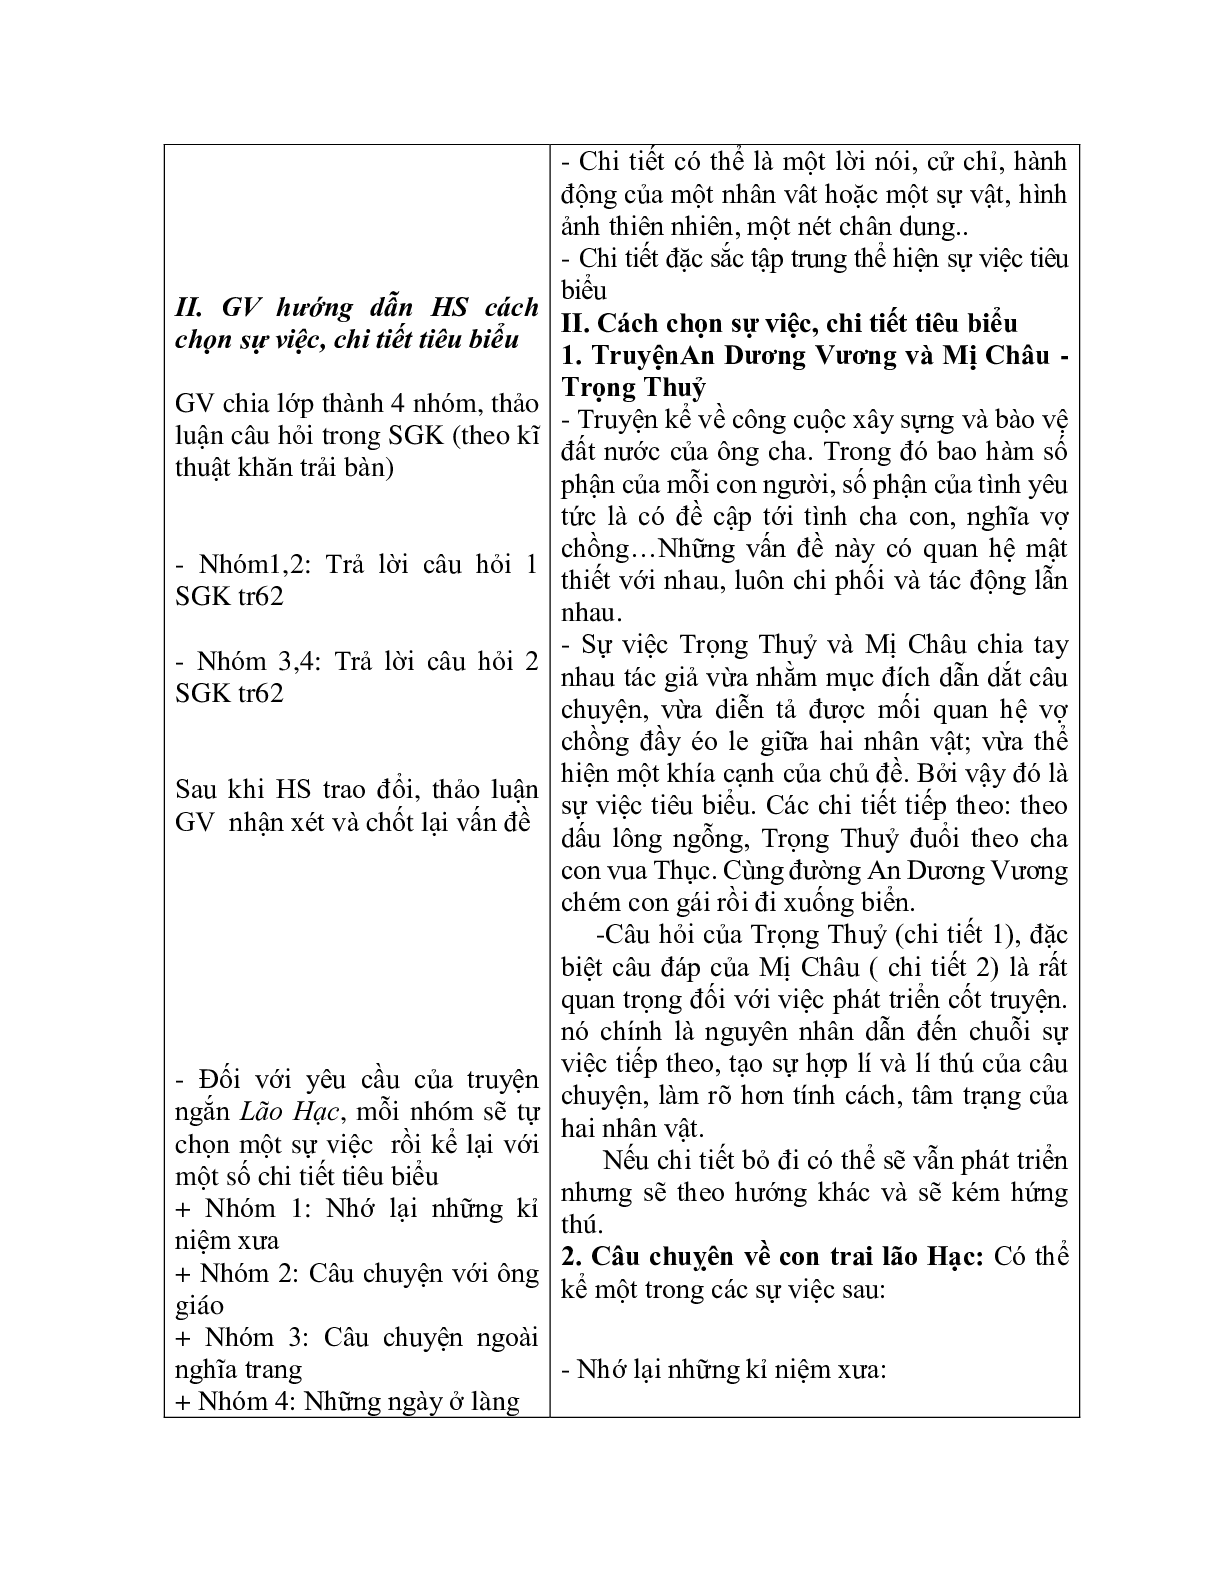 Giáo án ngữ văn lớp 10 Tiết 19: Chọn sự việc chi tiết tiêu biểu trong văn tự sự (trang 3)